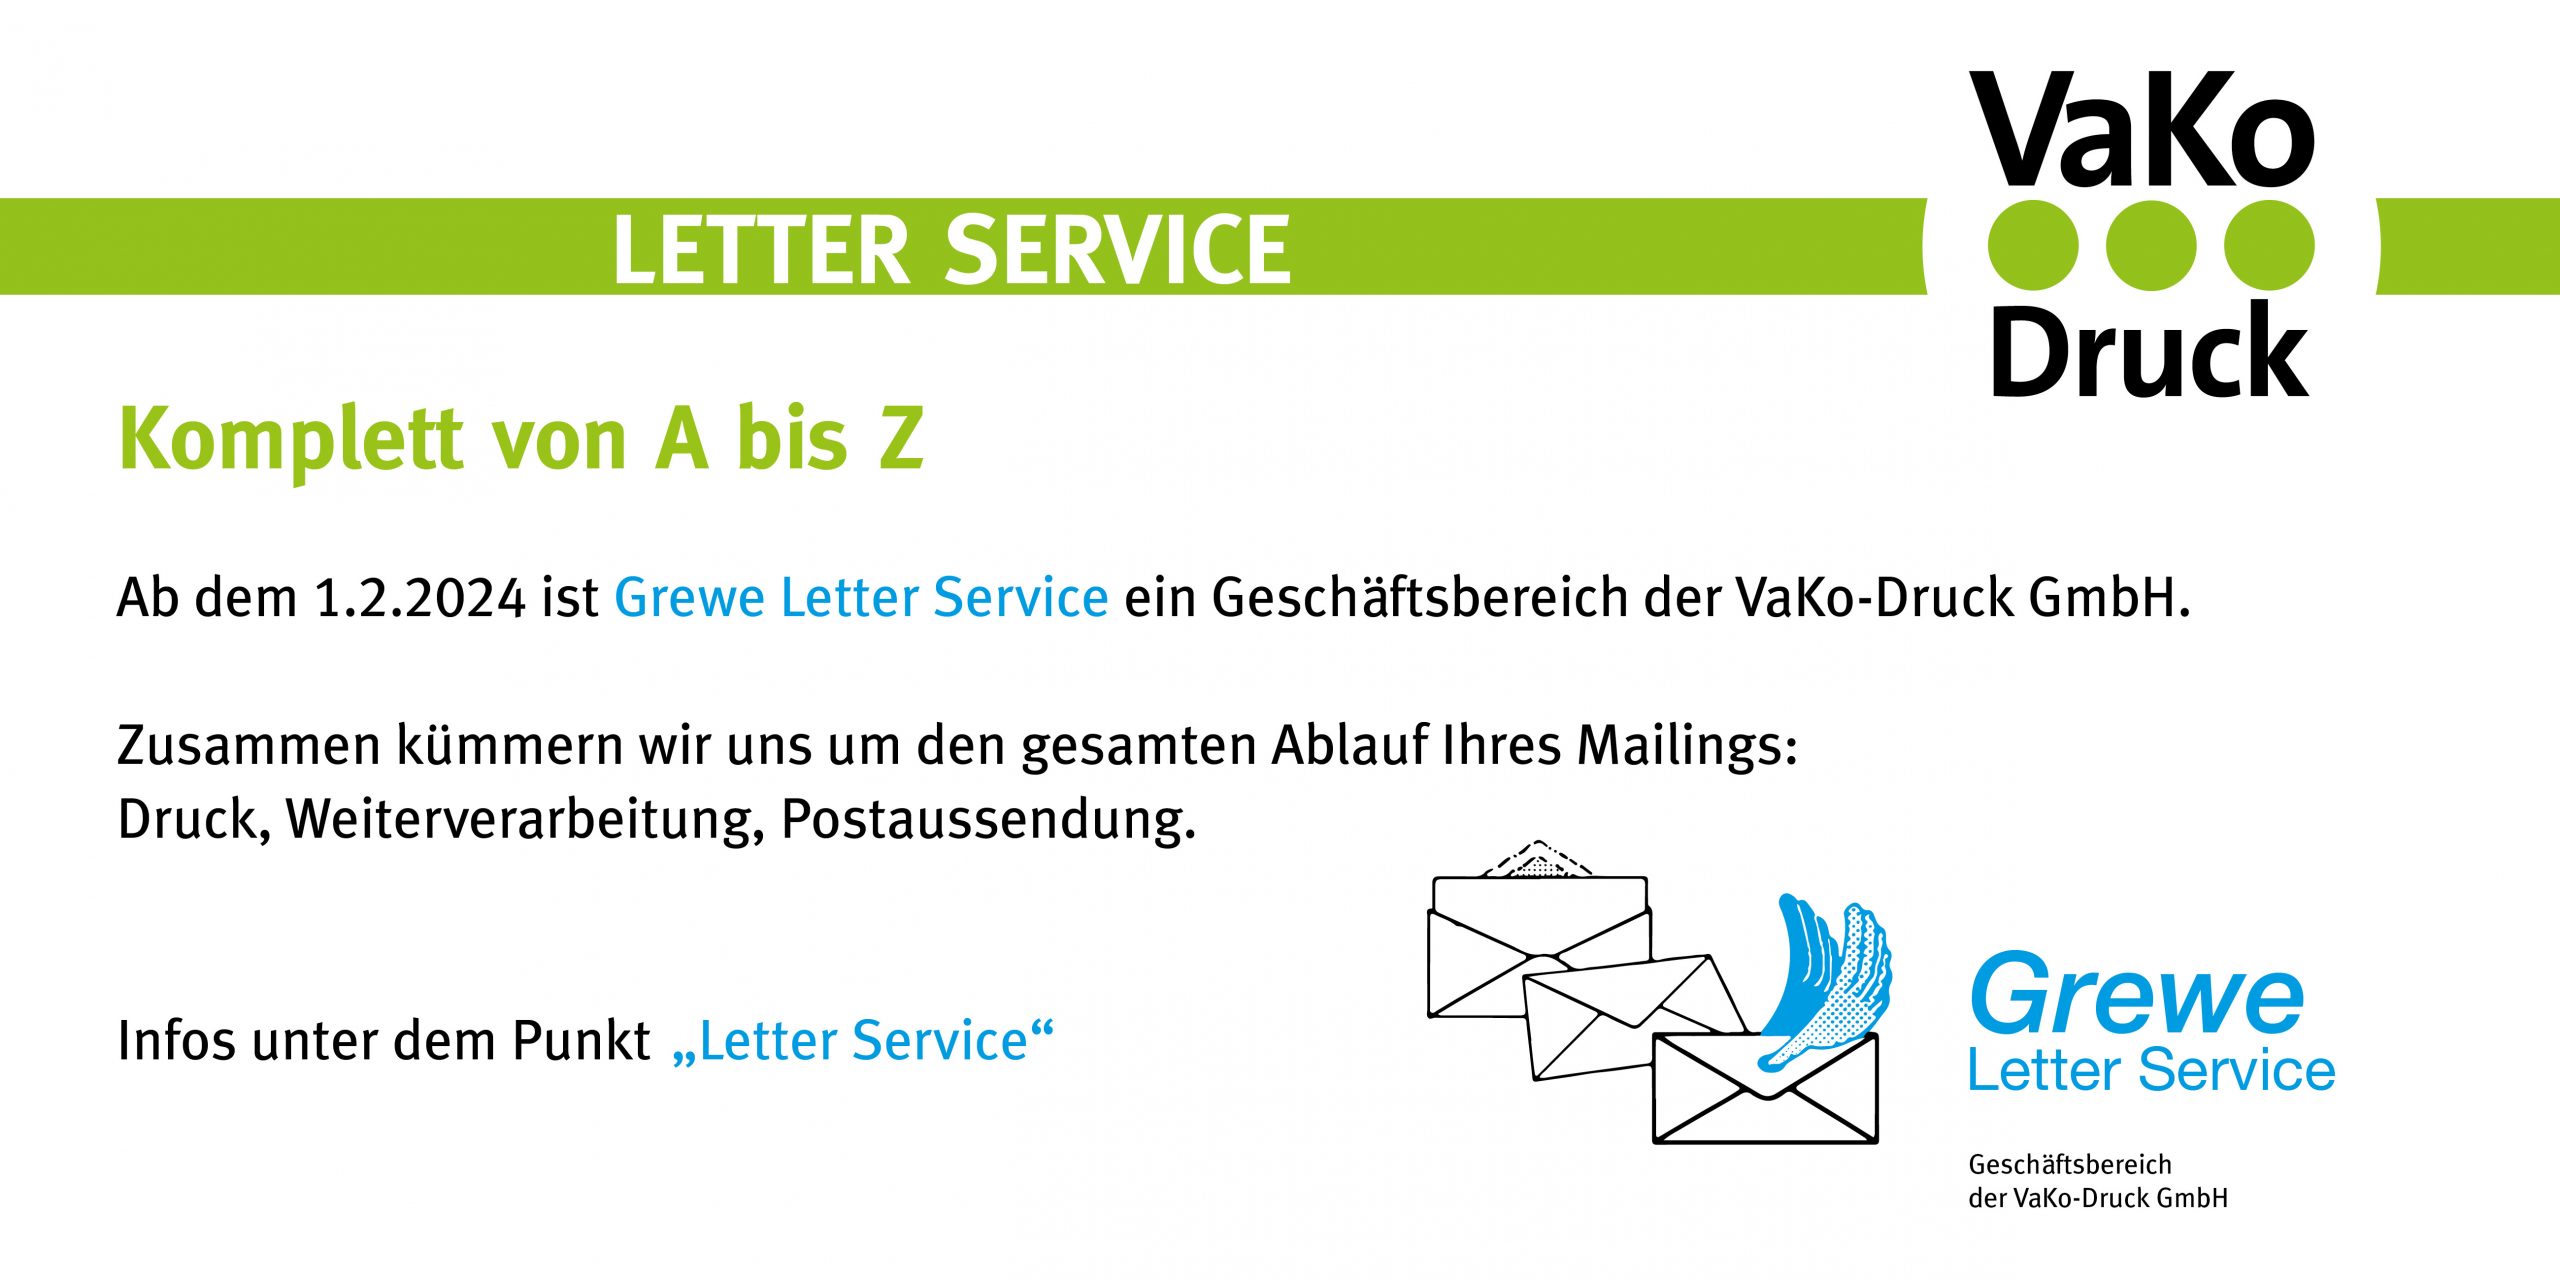 Grewe Letter Service ist ab dem 1.2.2024 ein Geschäftsbereich der VaKo-Druck GmbH